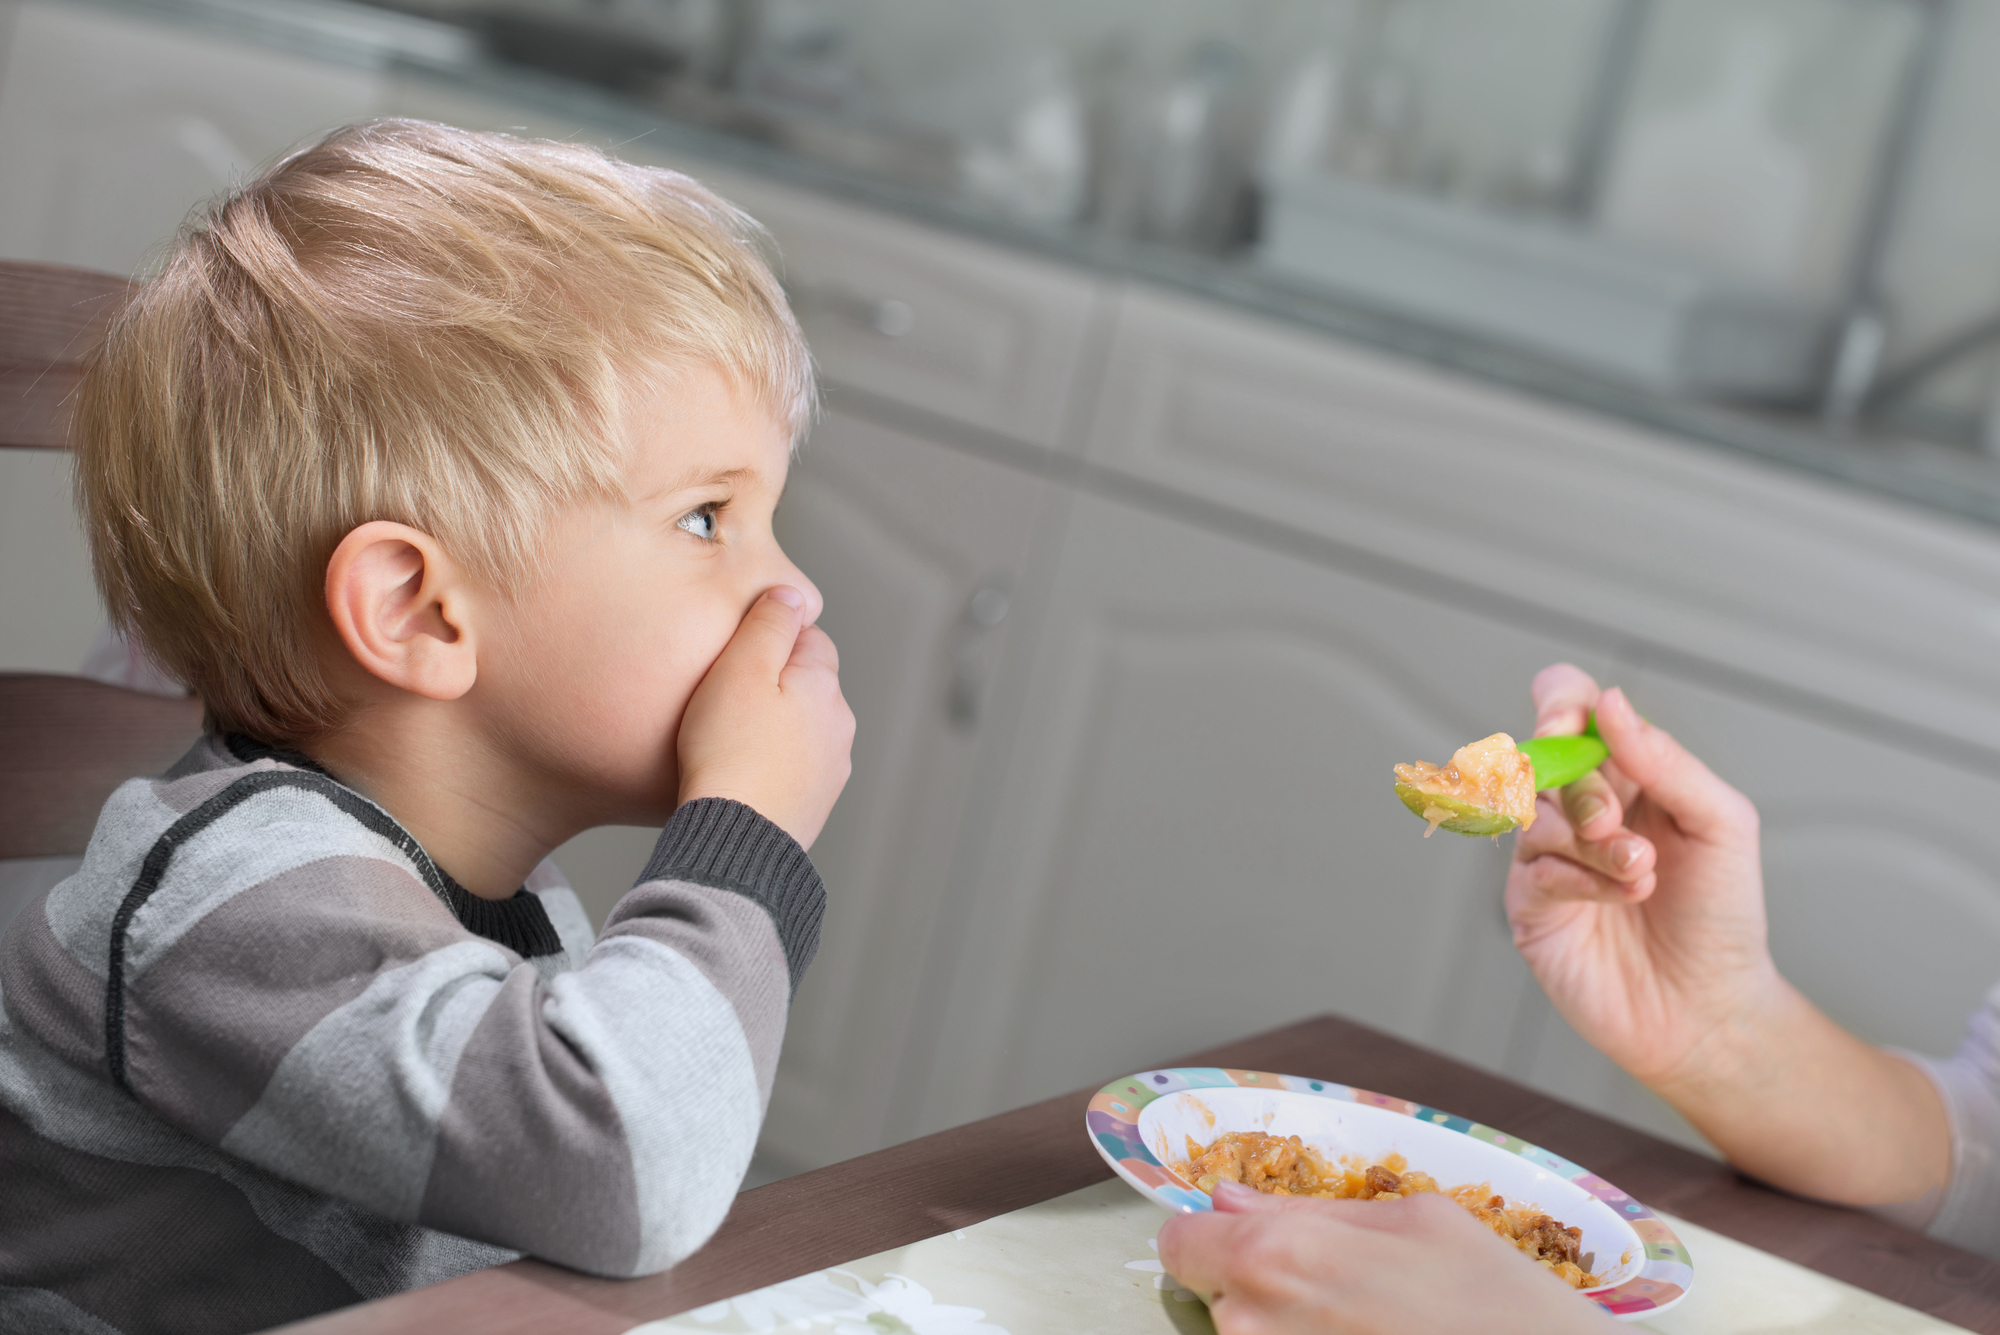 Ребенок плюется едой — что делать? в каких случаях ребенок плюется едой, что делать и как реагировать на подобное поведение? что делать, если ребенок плюется едой ребенок выплевывает пищу.